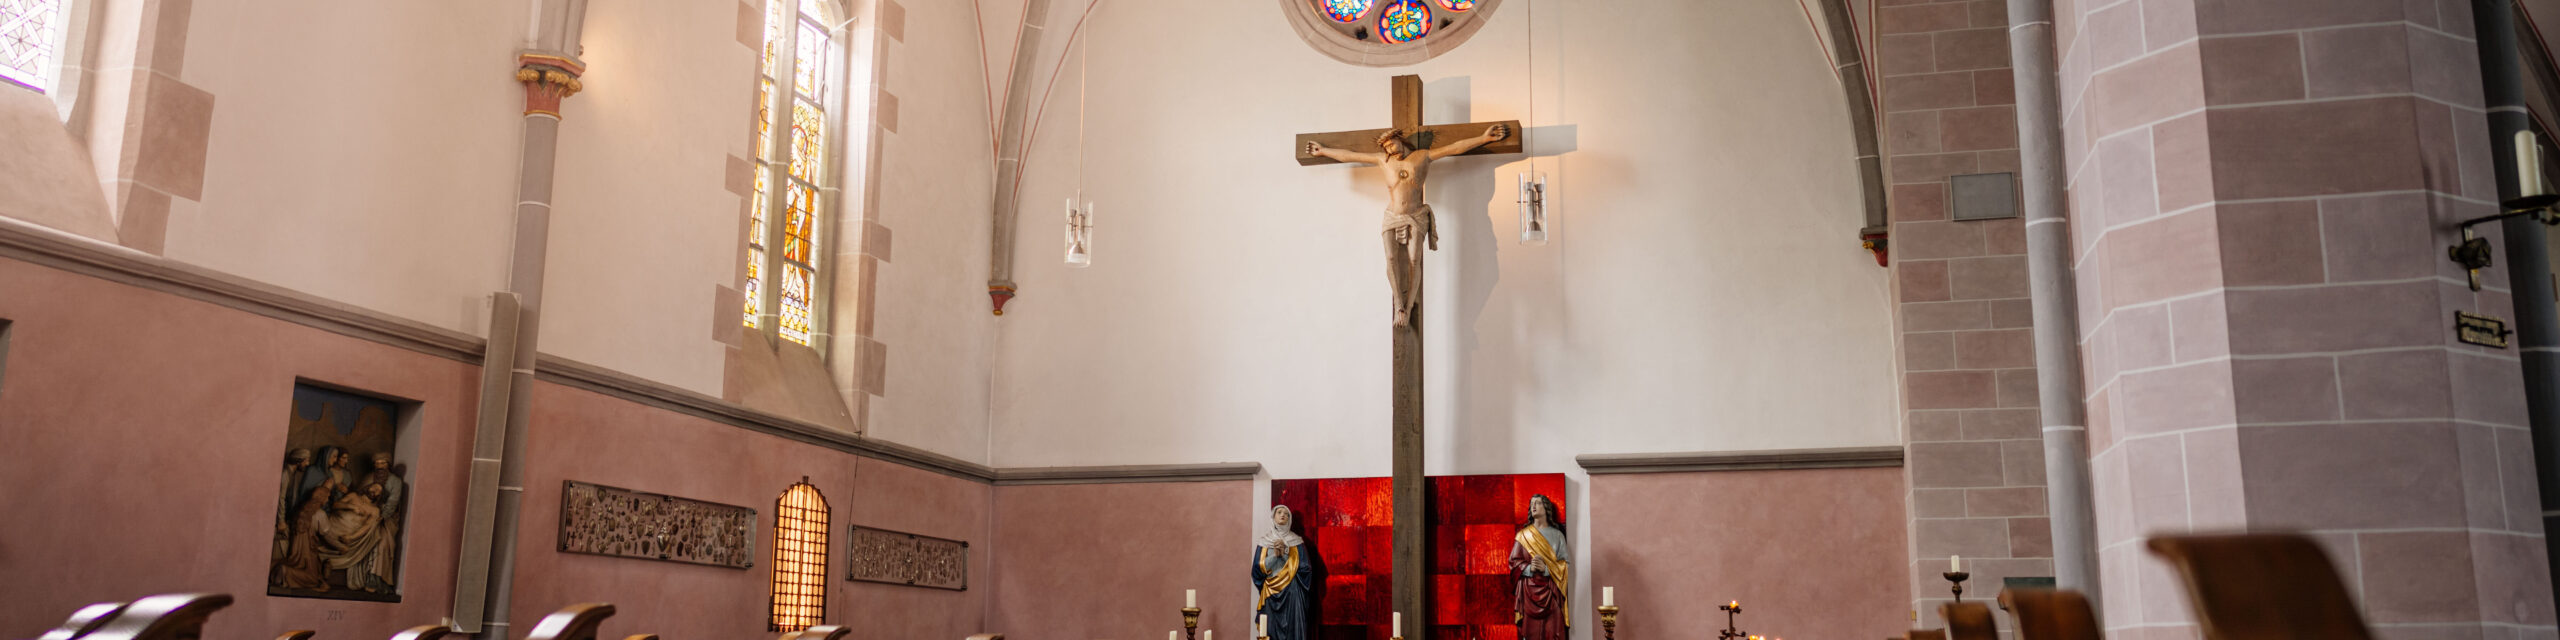 Das große Kreuz im Kreuzschiff von St. Johannes Baptist. Links das Buntglasfenster mit der heiligen Helena und Bischof Macarius.